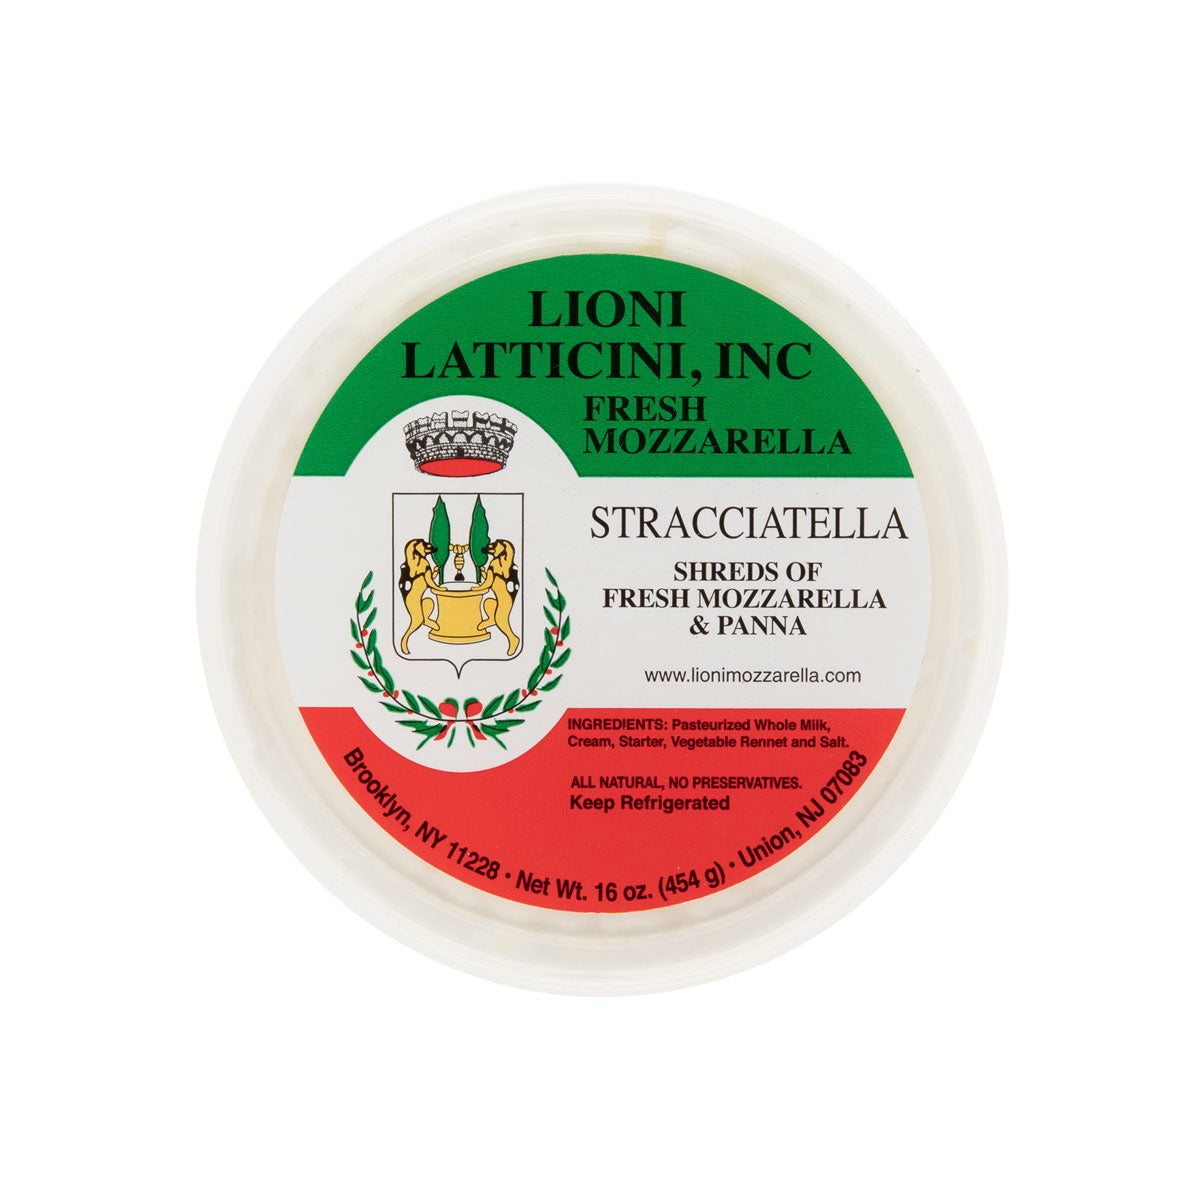 Lioni Latticini, Inc. Stracciatella 1 LB